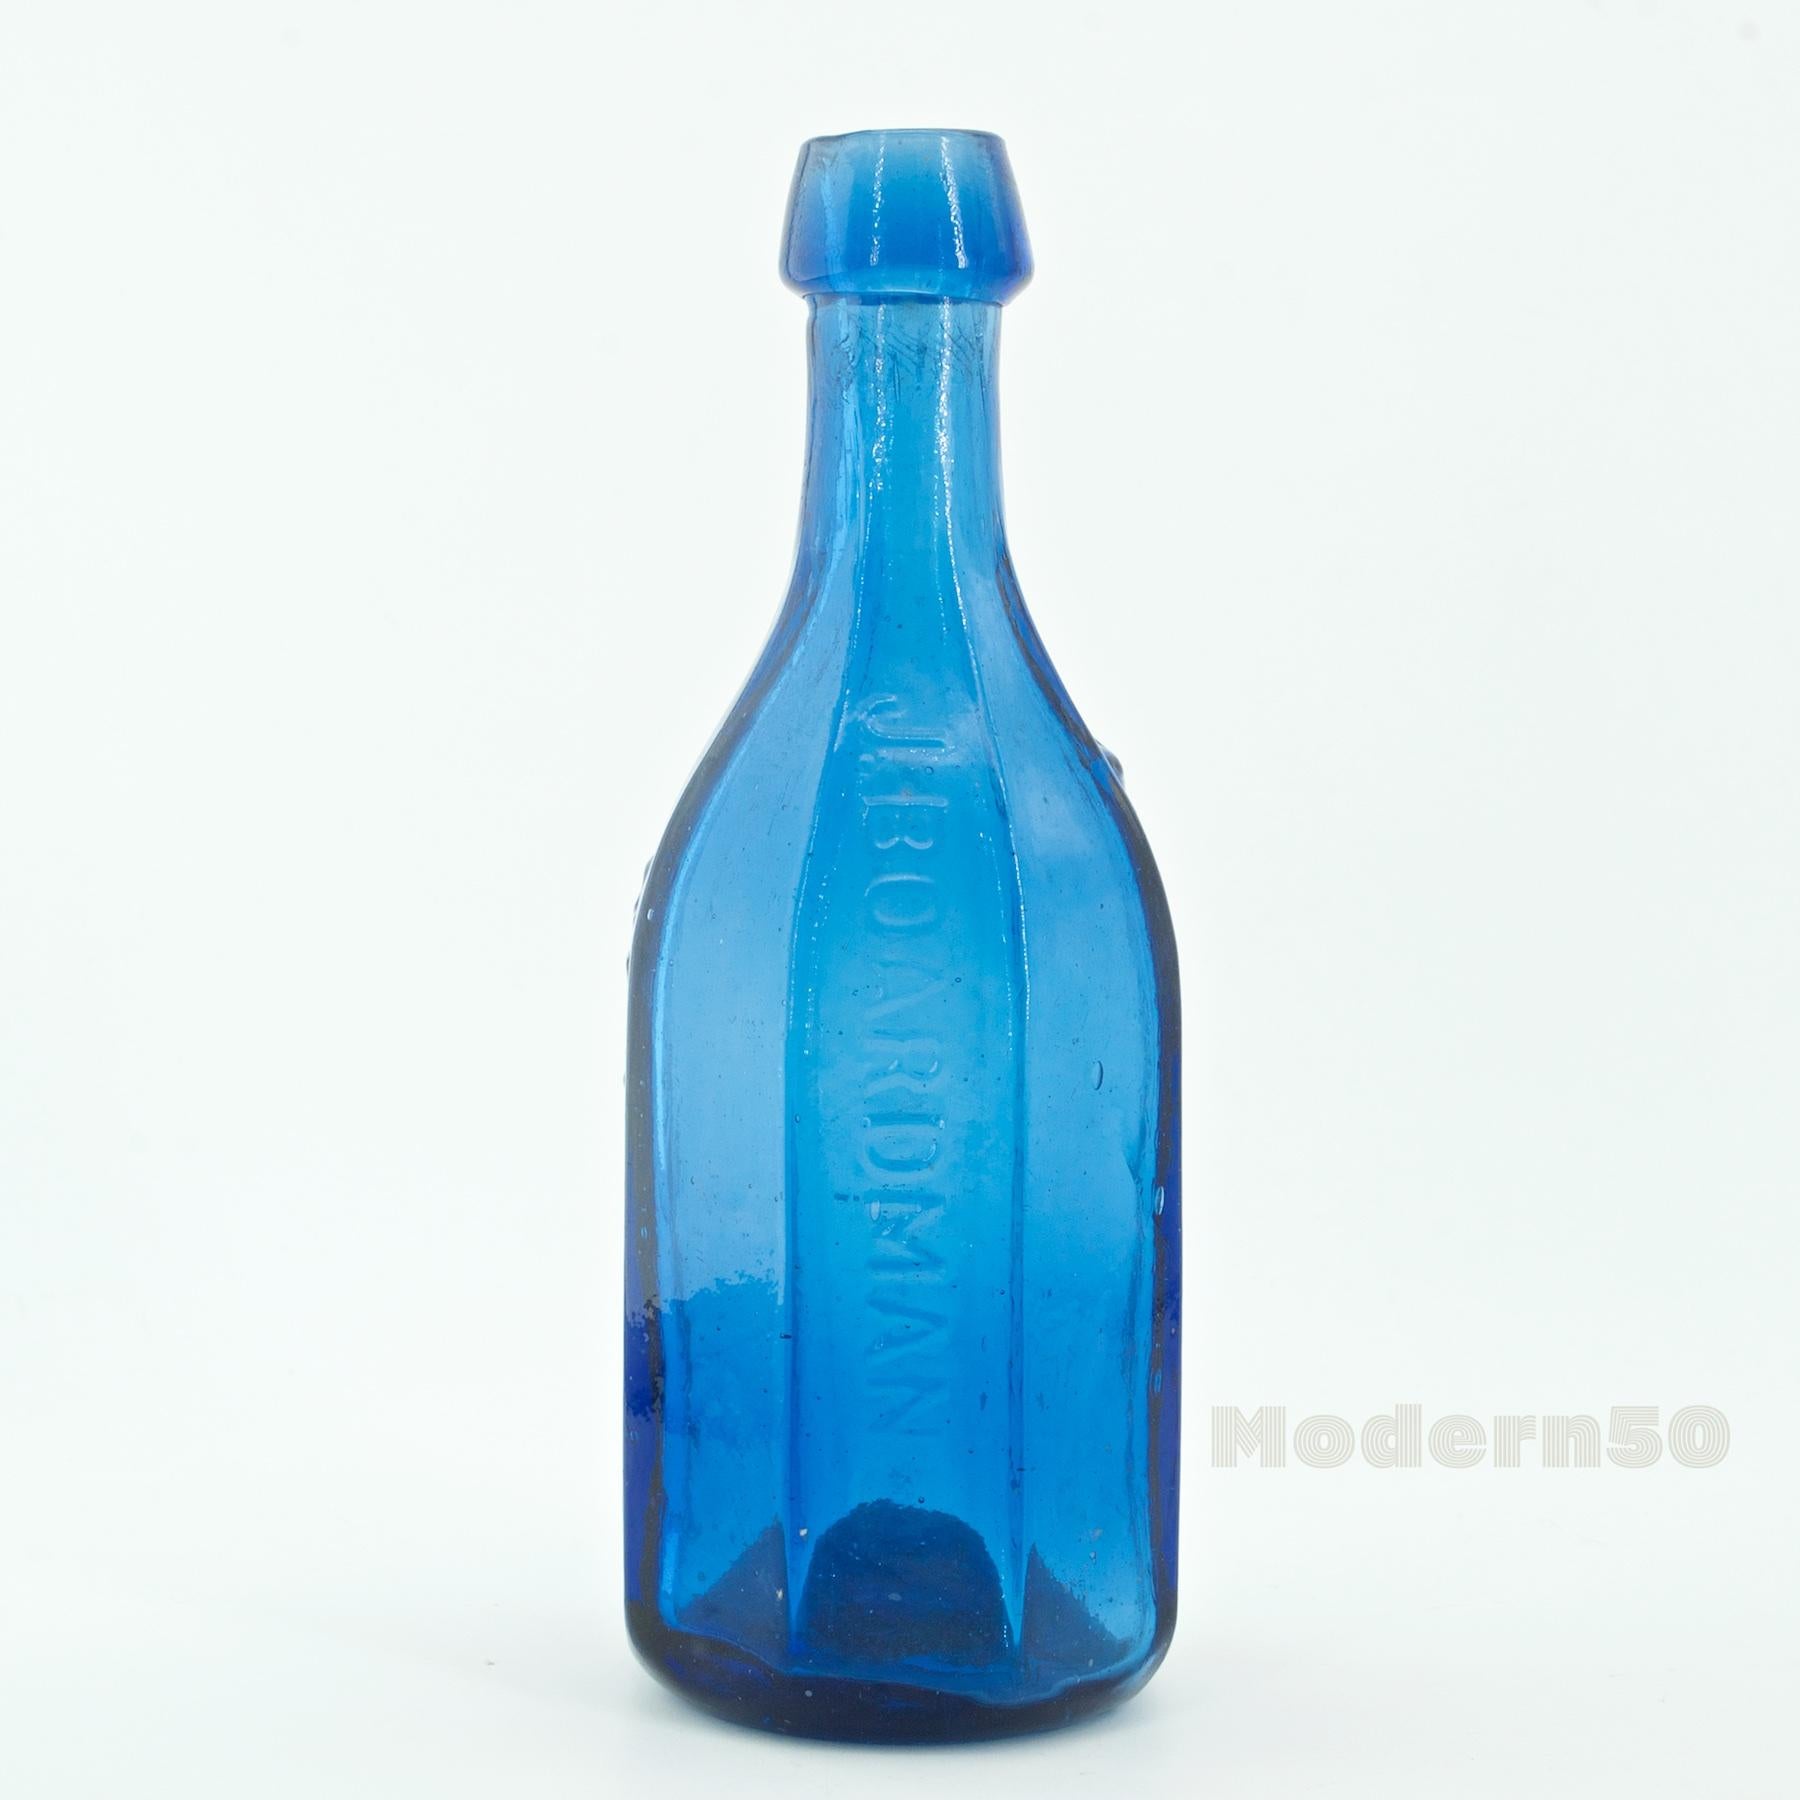 boardman bottle